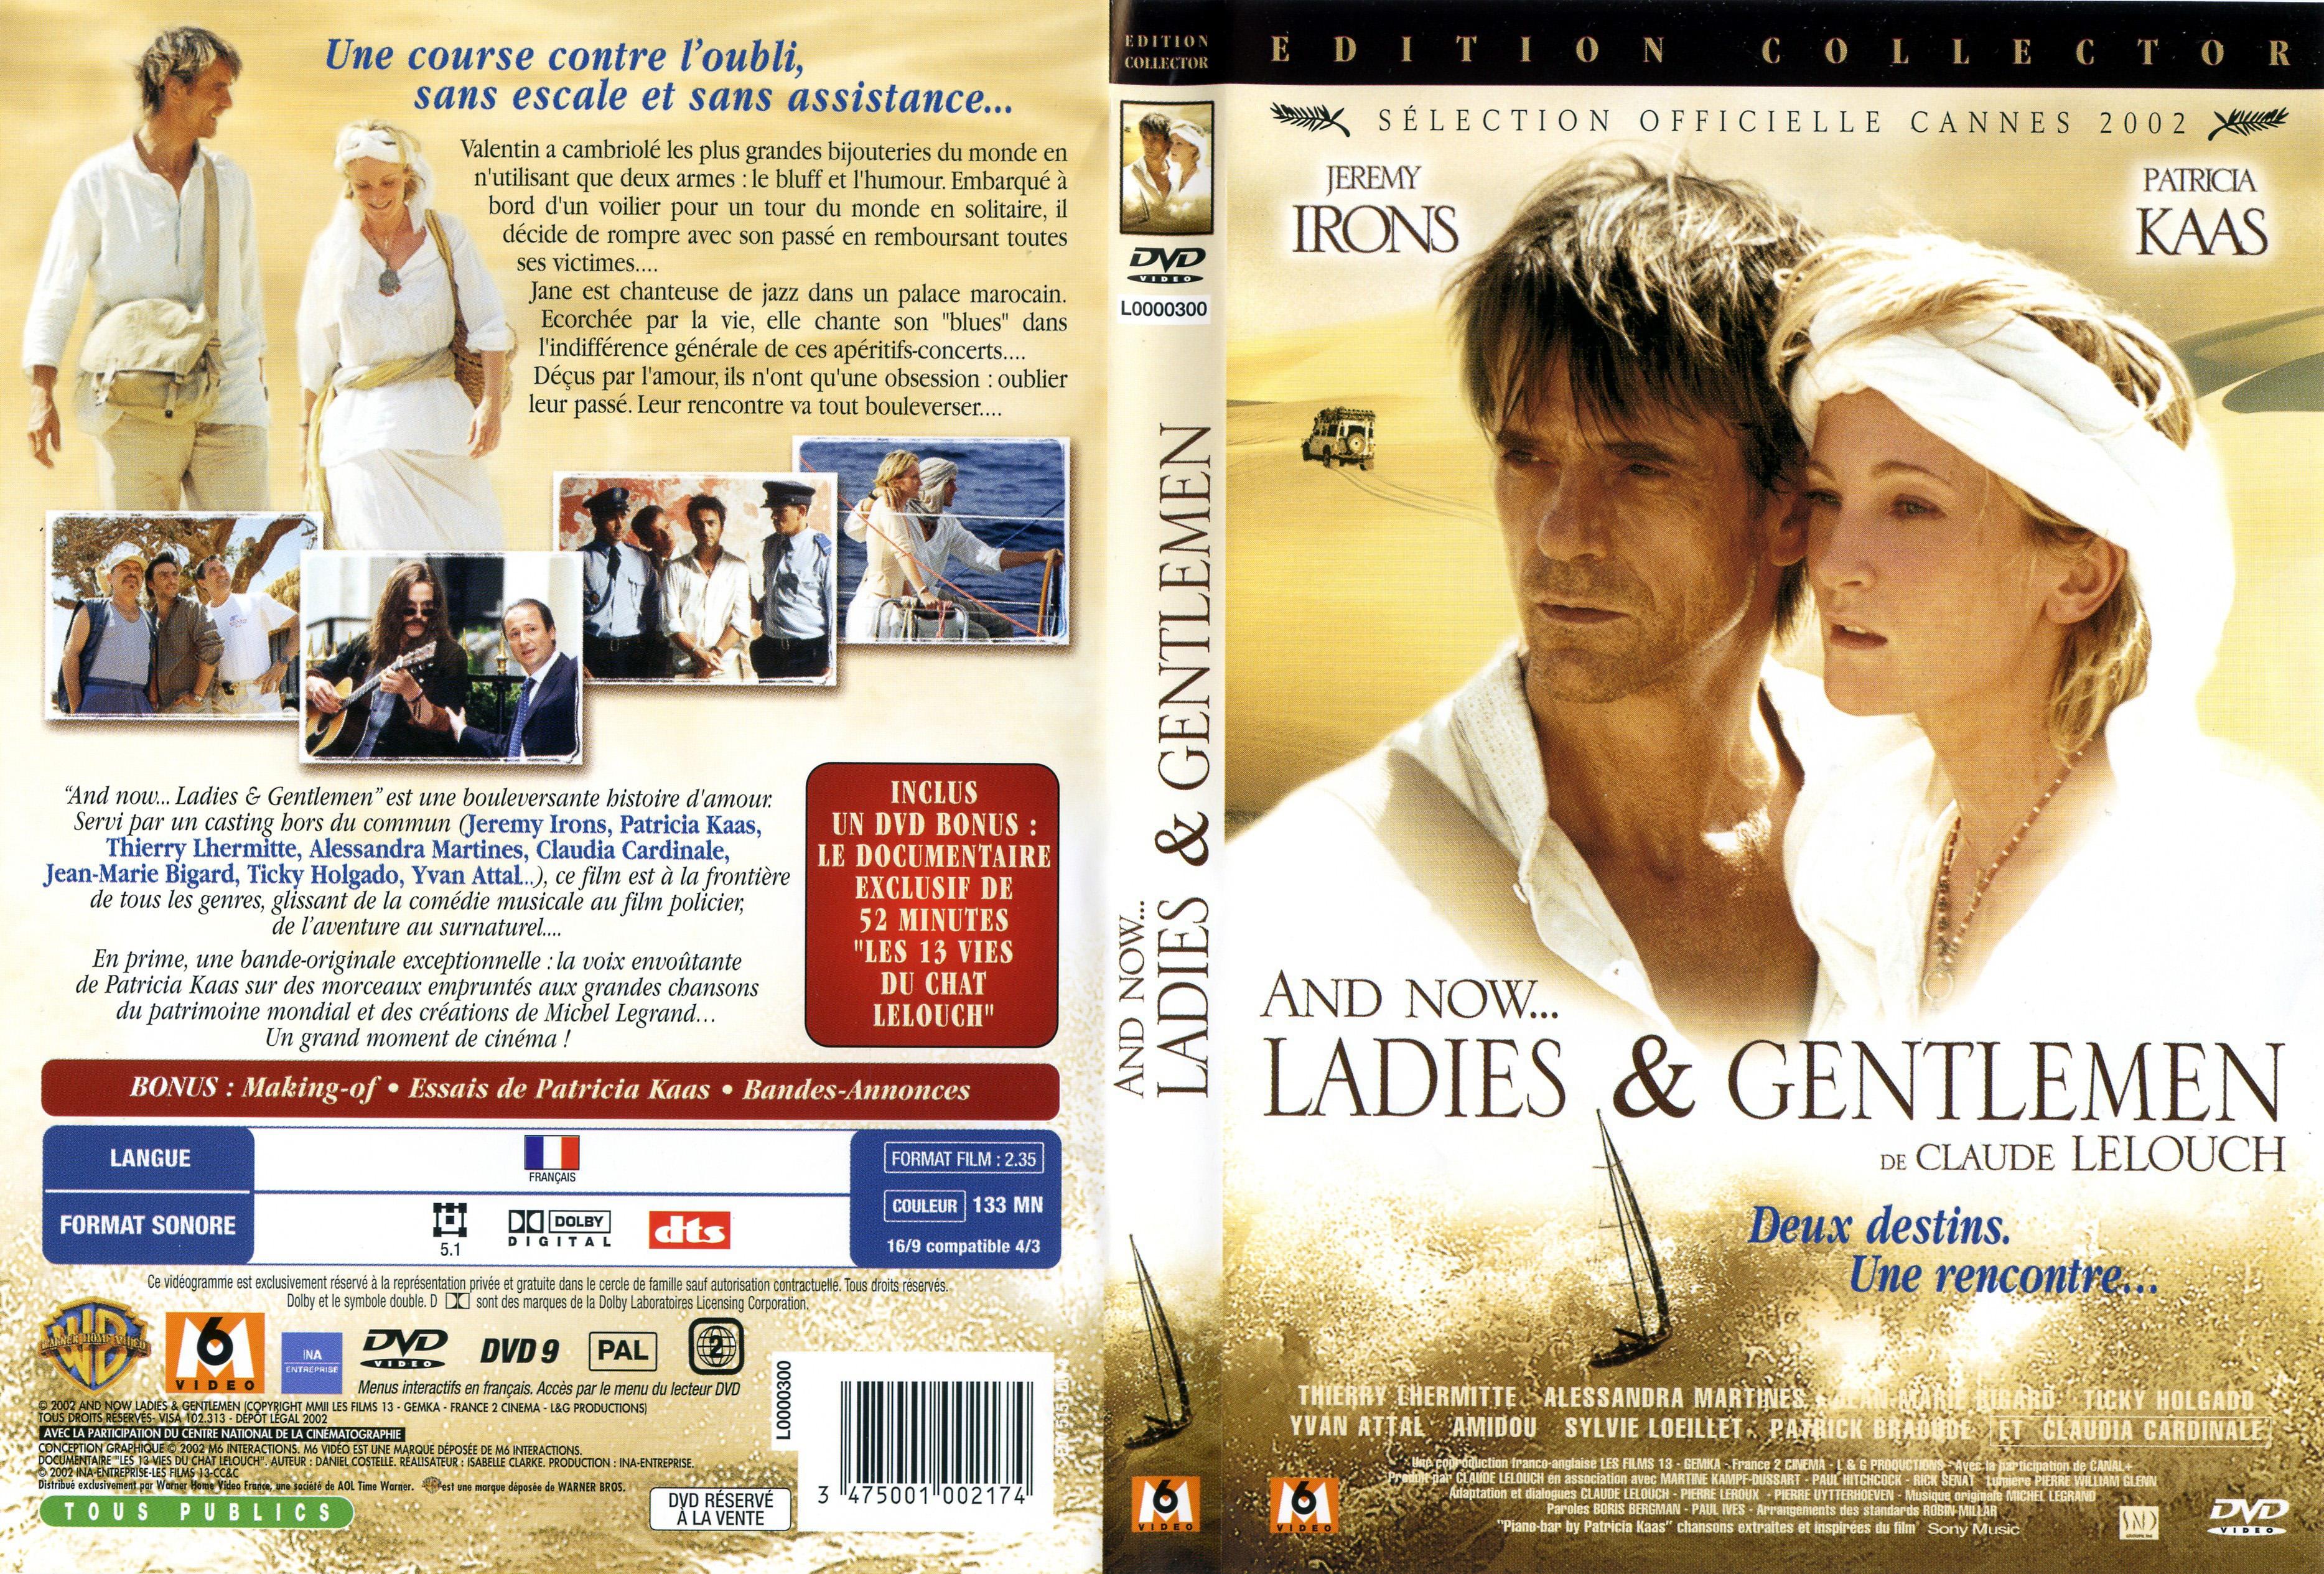 Jaquette DVD de And now ladies and gentlemen - Cinéma Passion